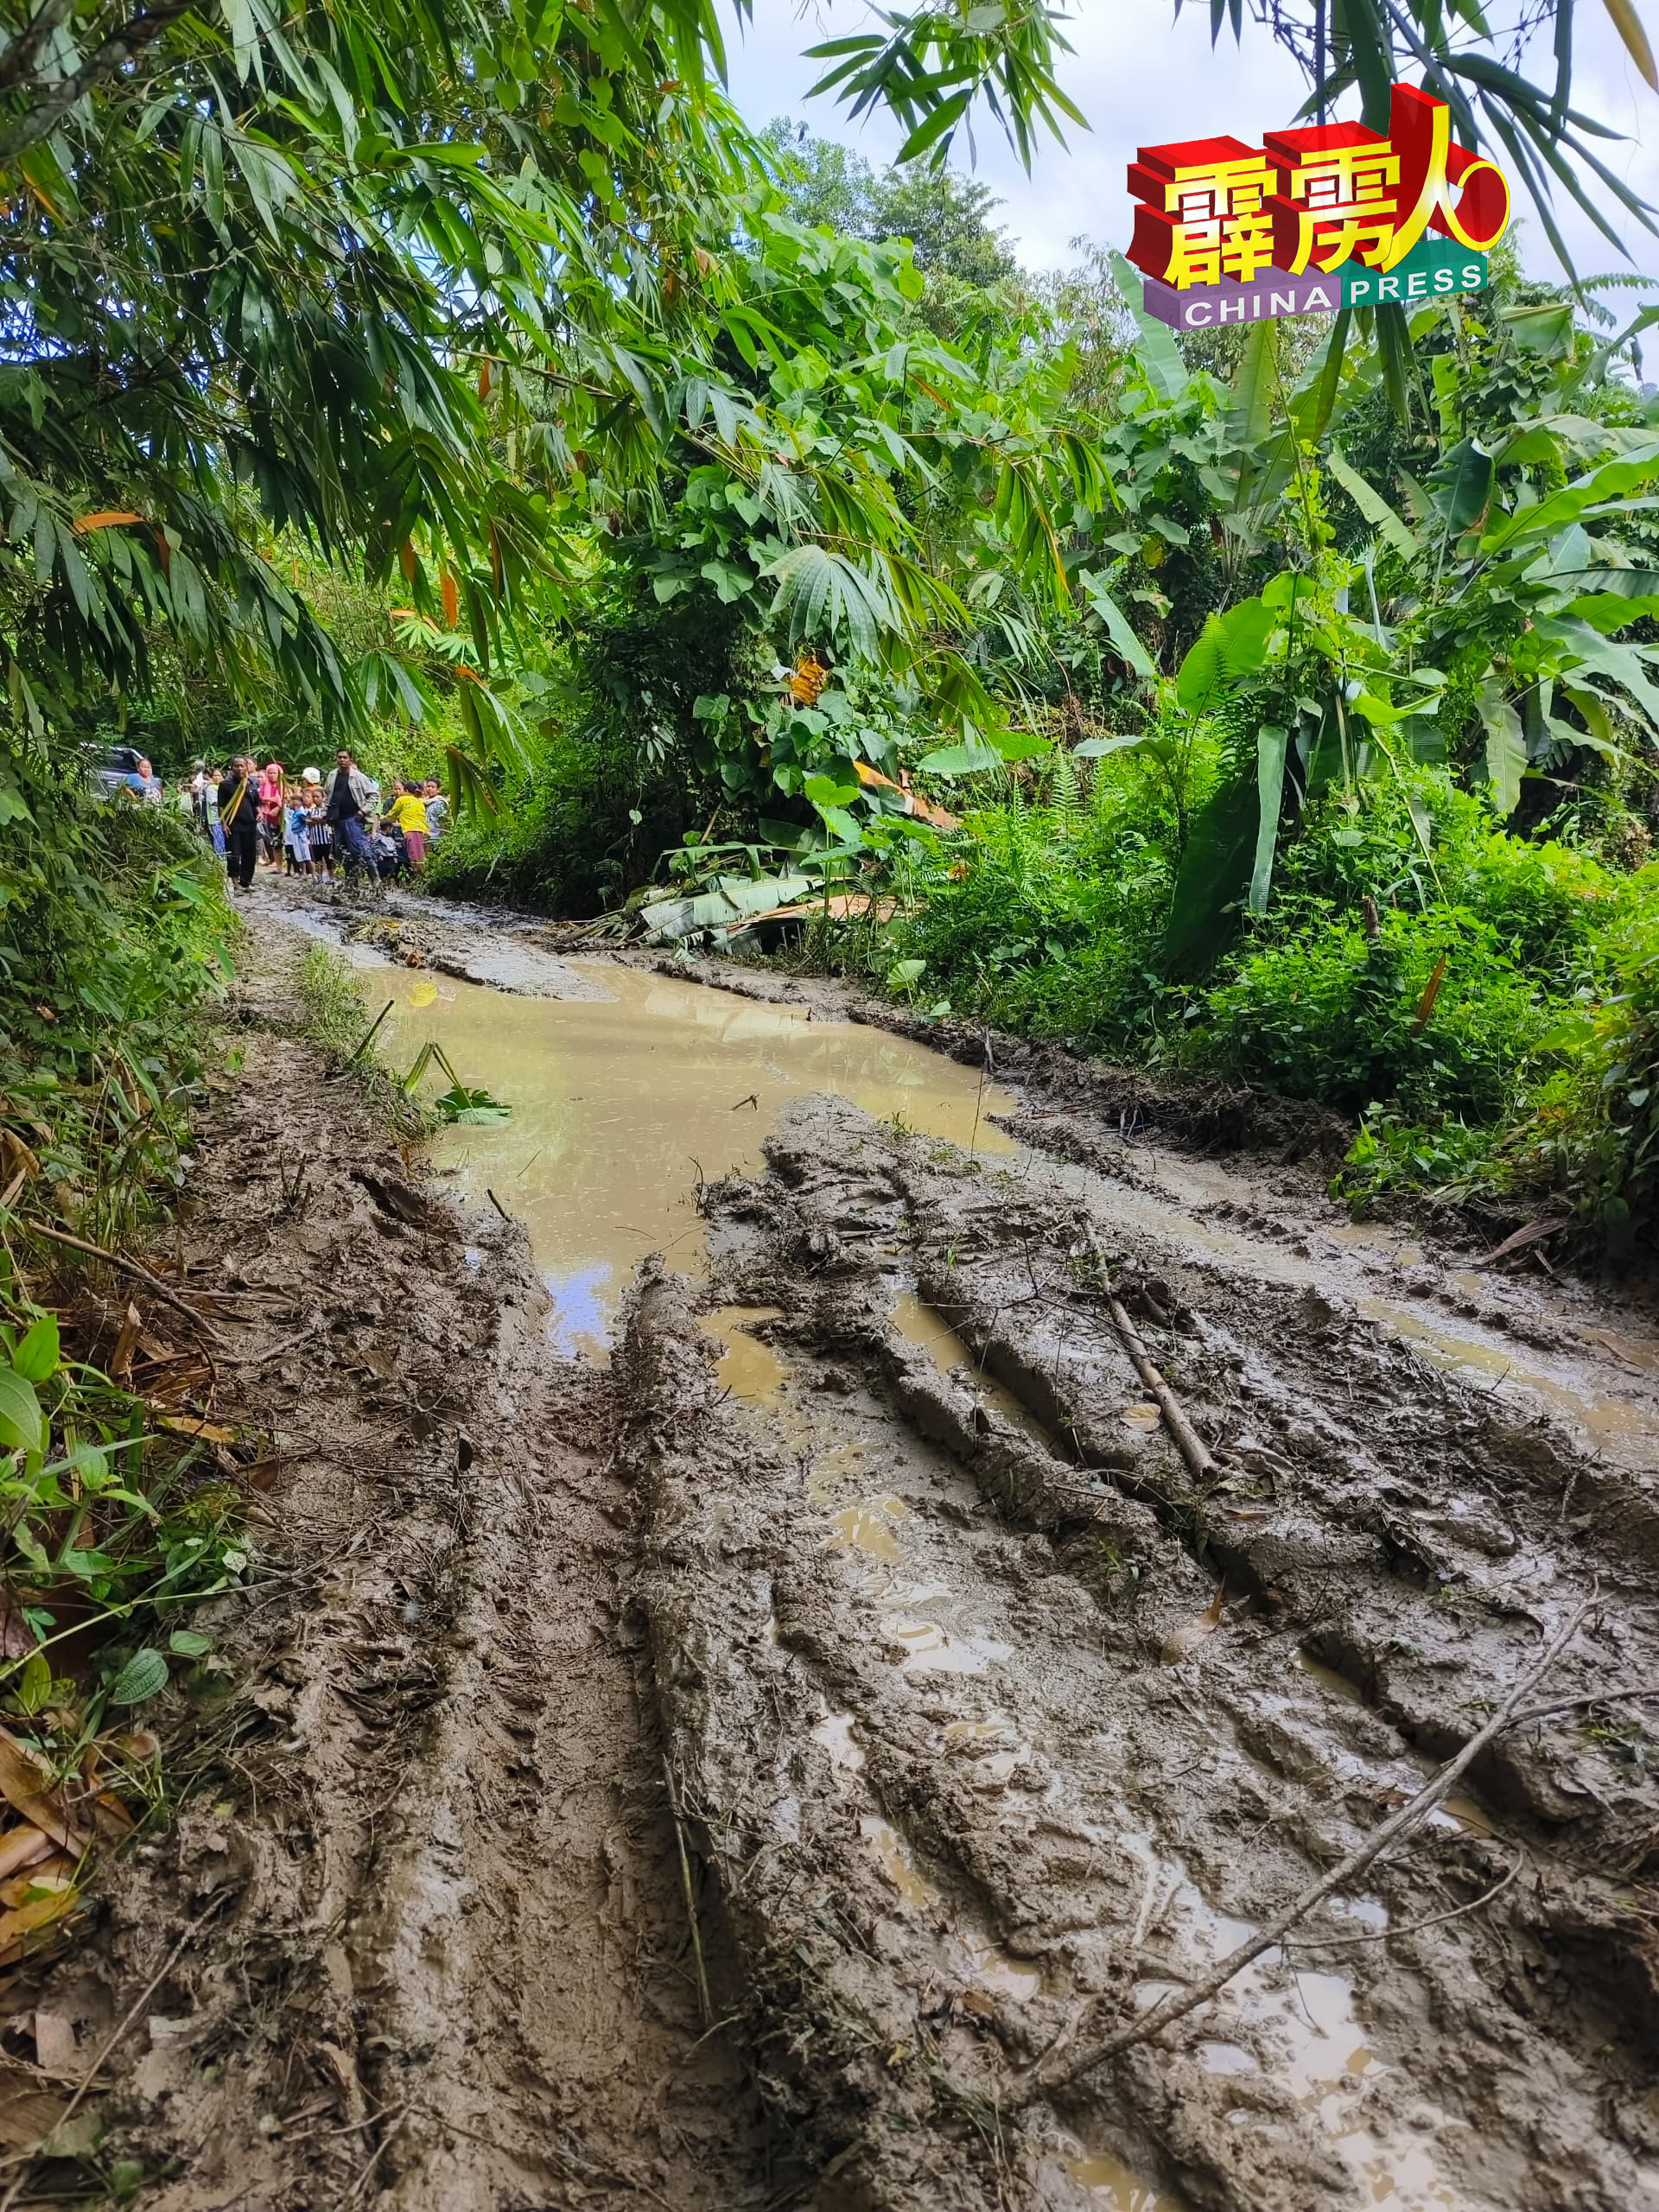 由于连日雨天，导致泥路变成泥泞，举步维艰，加深了工作人员迁象的难度。